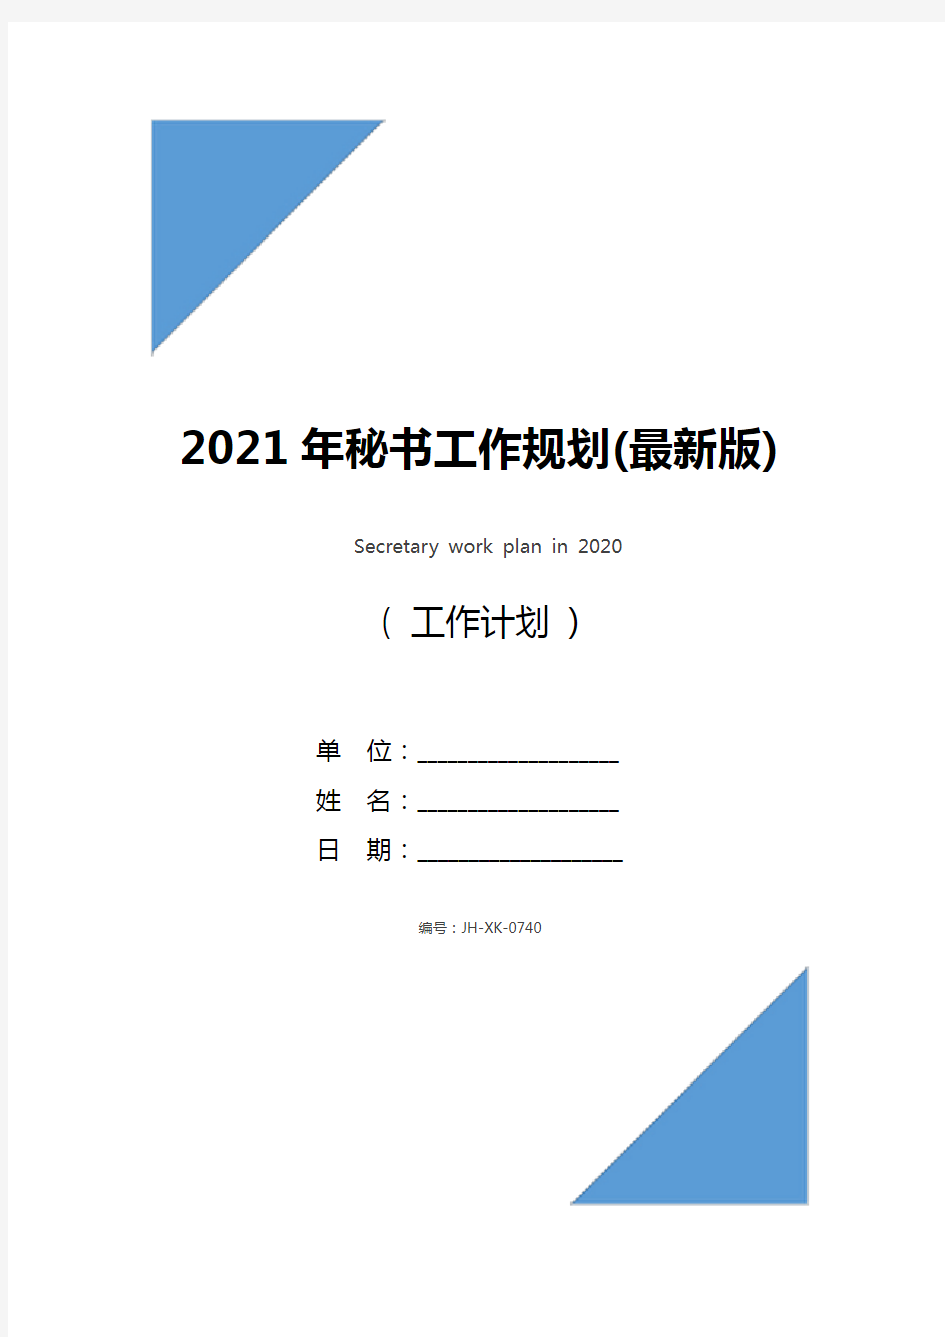 2021年秘书工作规划(最新版)